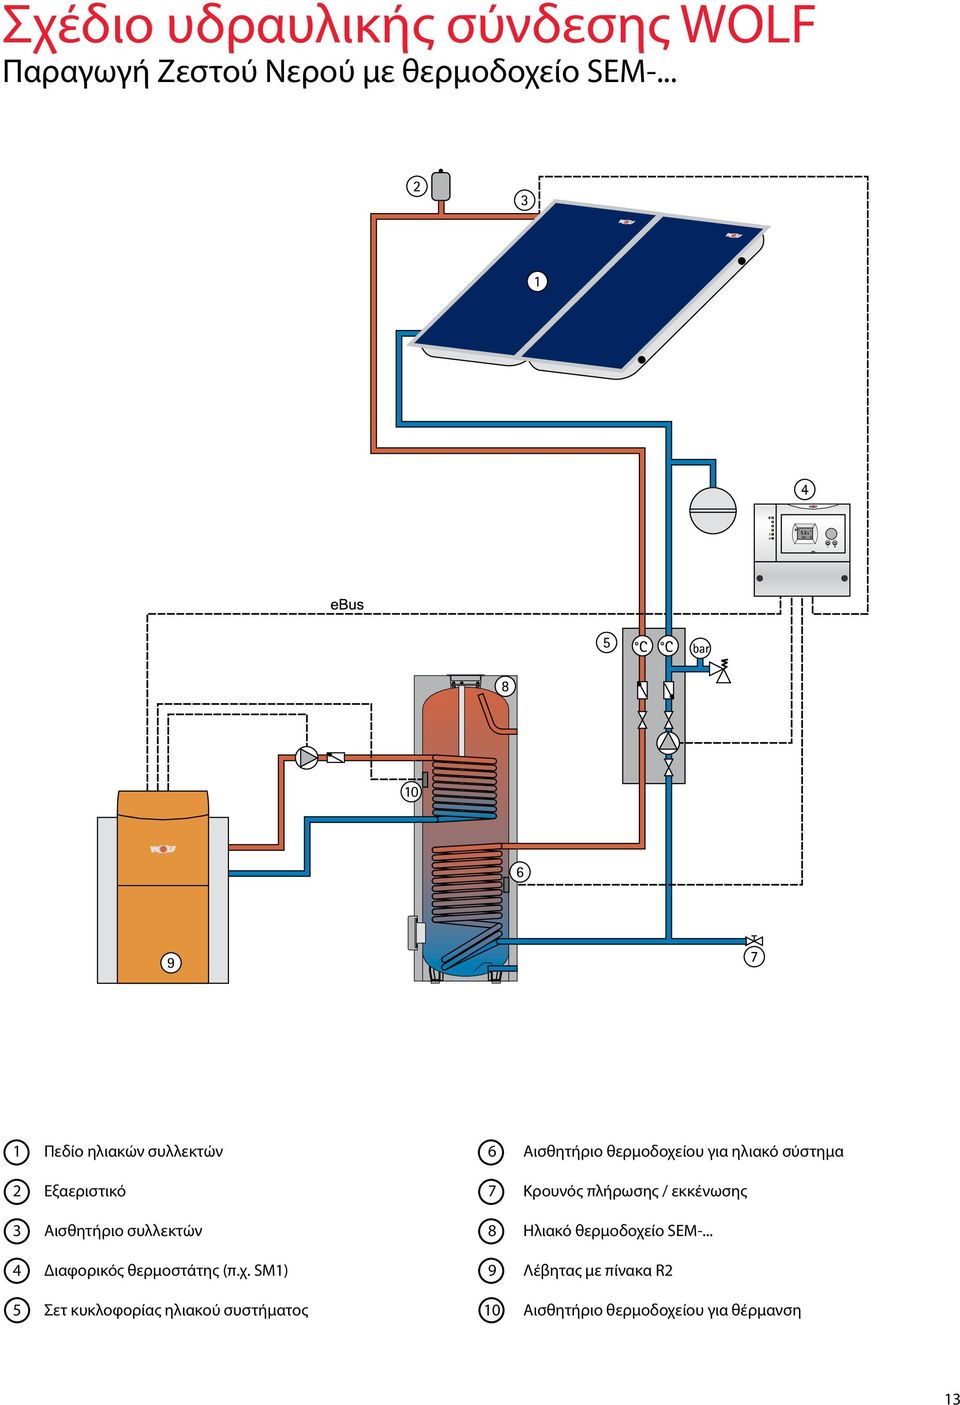 Κρουνός πλήρωσης / εκκένωσης 3 Αισθητήριο συλλεκτών 8 Ηλιακό θερμοδοχείο SEM-.